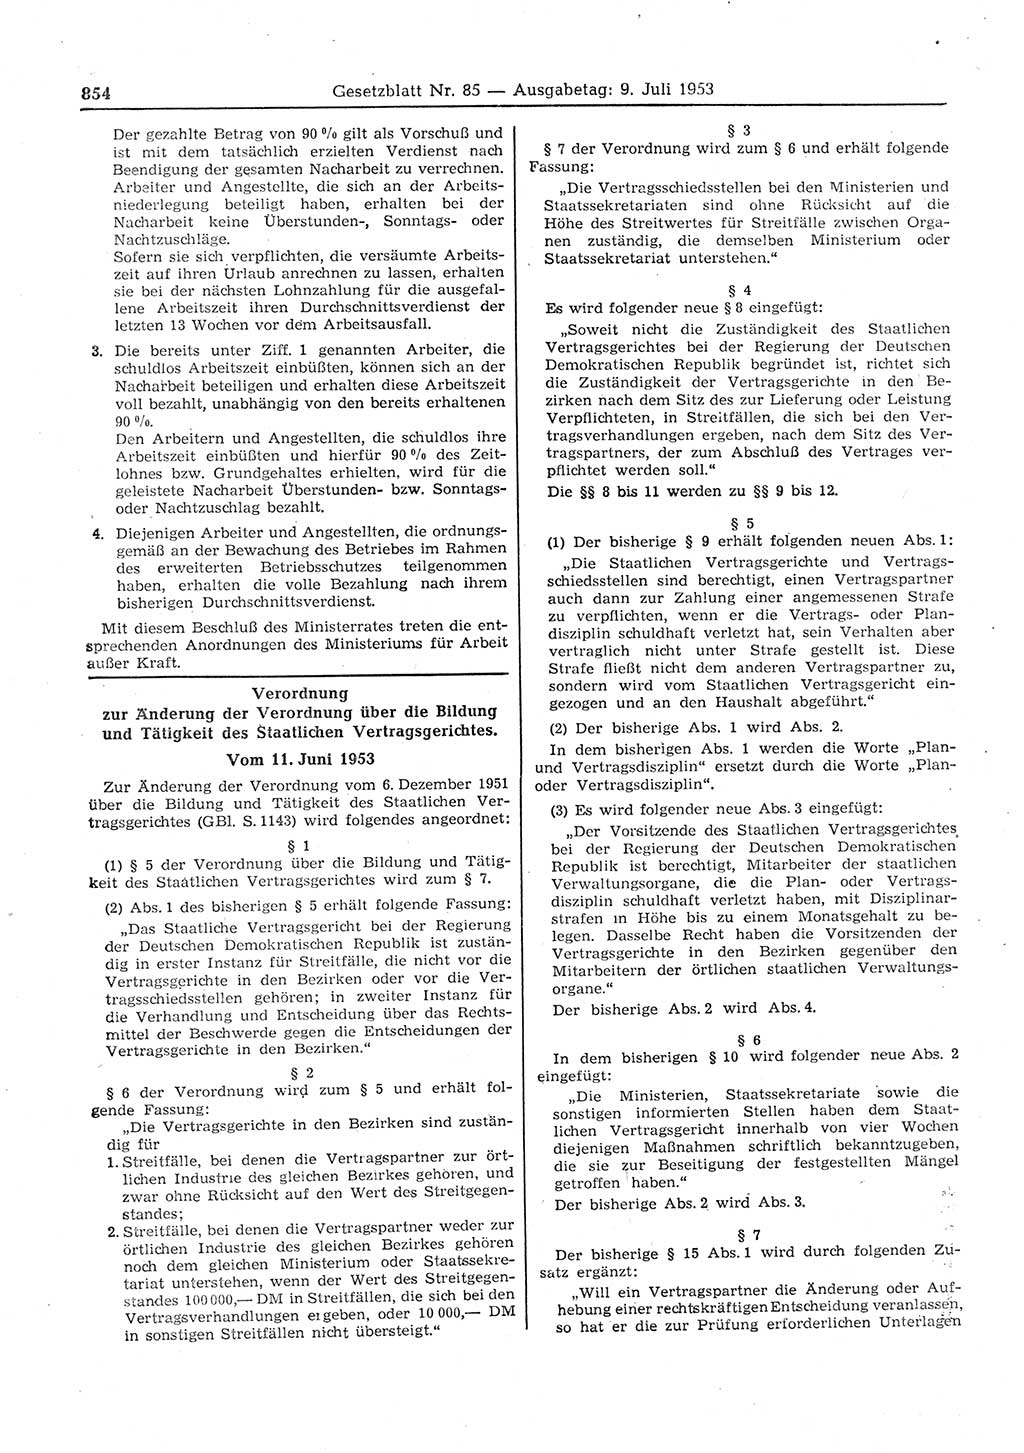 Gesetzblatt (GBl.) der Deutschen Demokratischen Republik (DDR) 1953, Seite 854 (GBl. DDR 1953, S. 854)